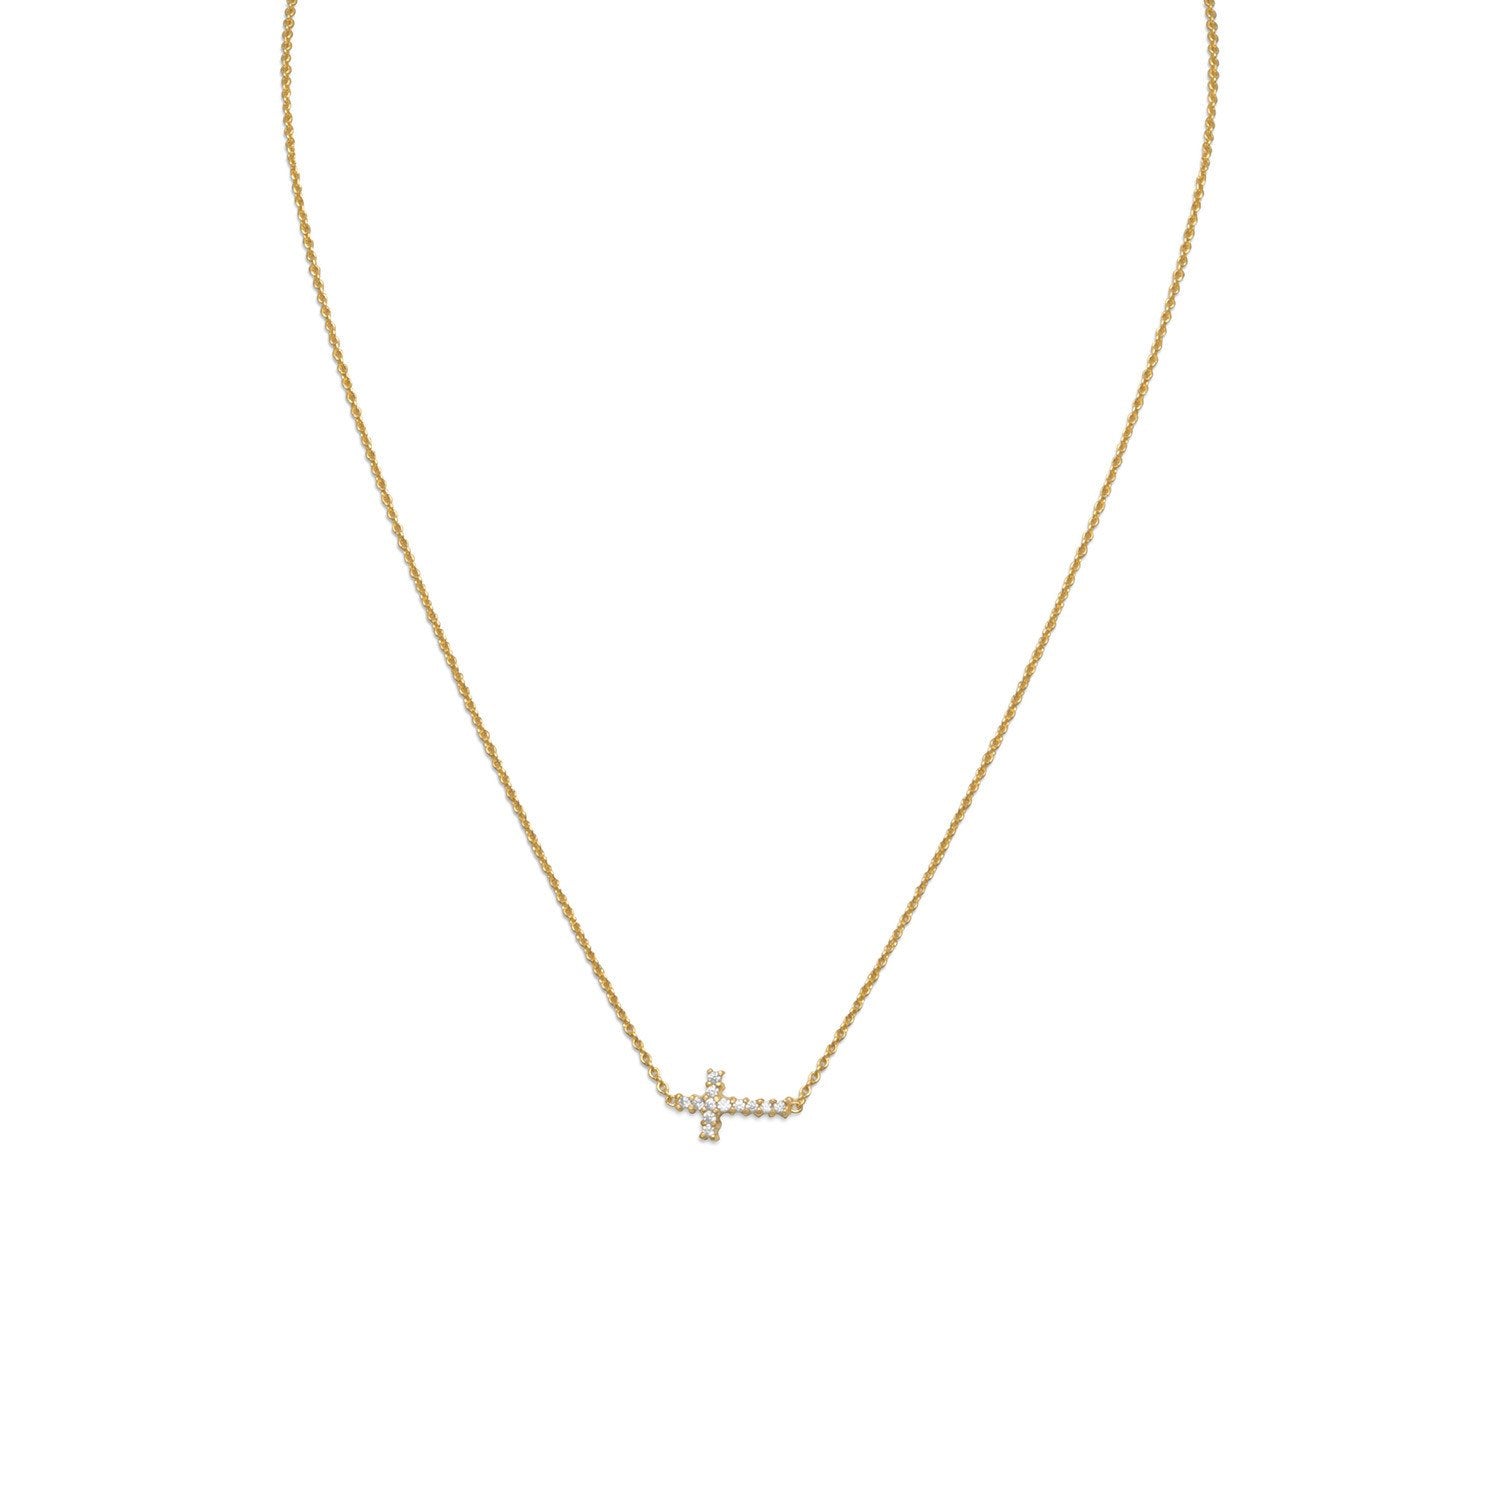 16" 14 Karat Gold Plated Necklace with Sideways CZ Cross - Joyeria Lady